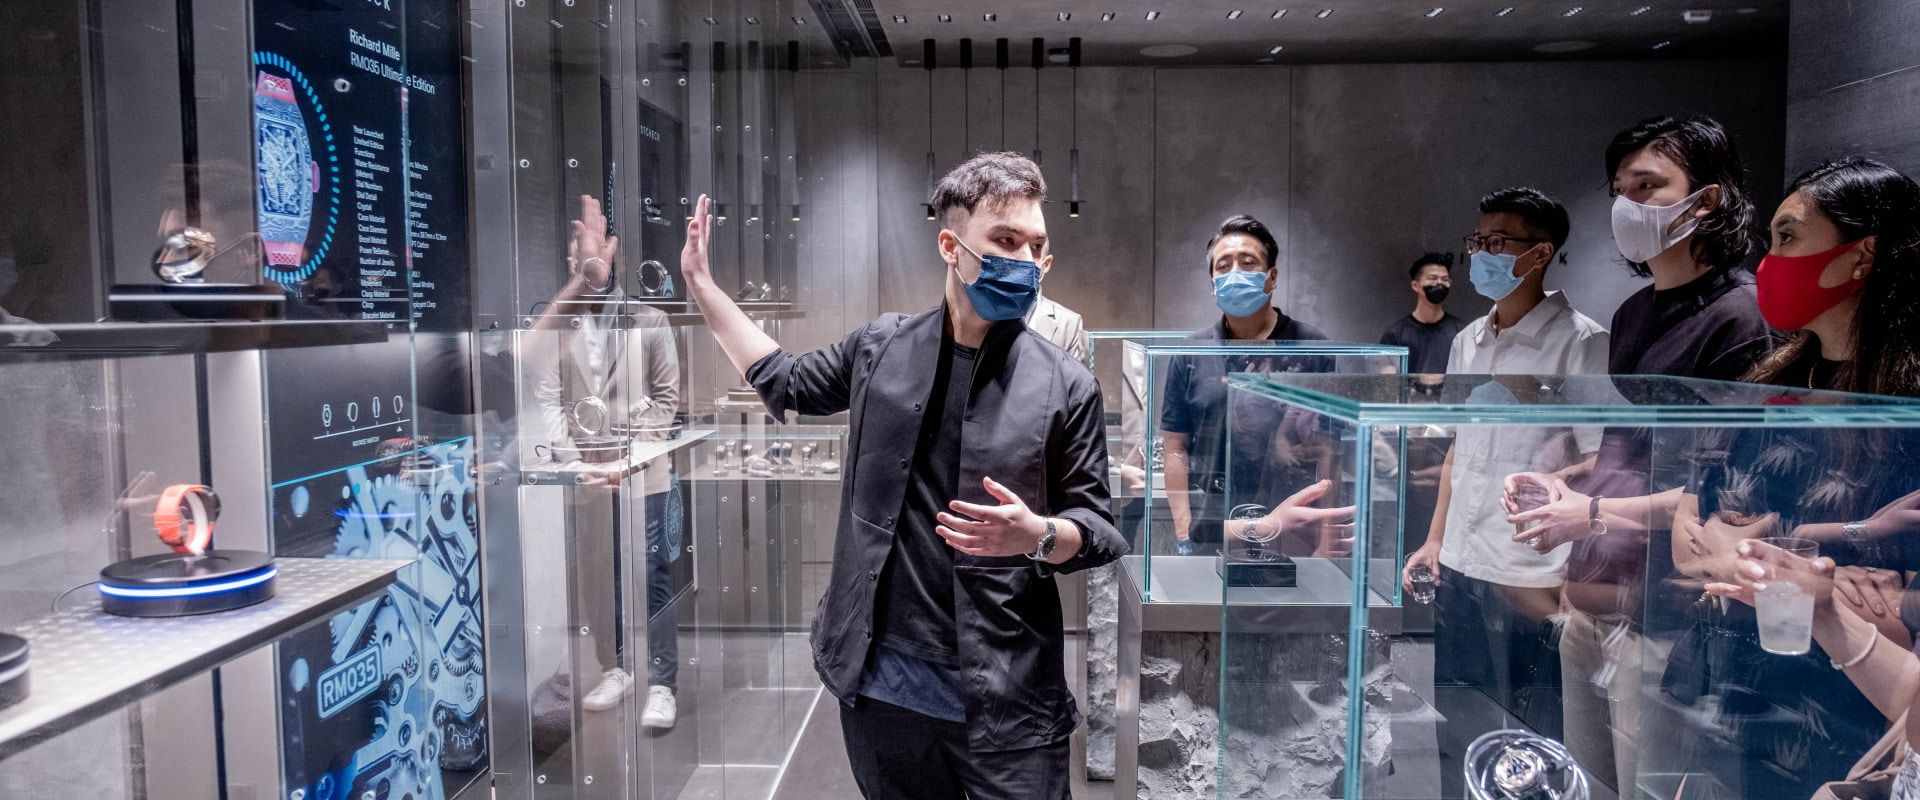 Wristcheck Experience Hongkong - Garamantis entwickelt interaktives Schaufenster